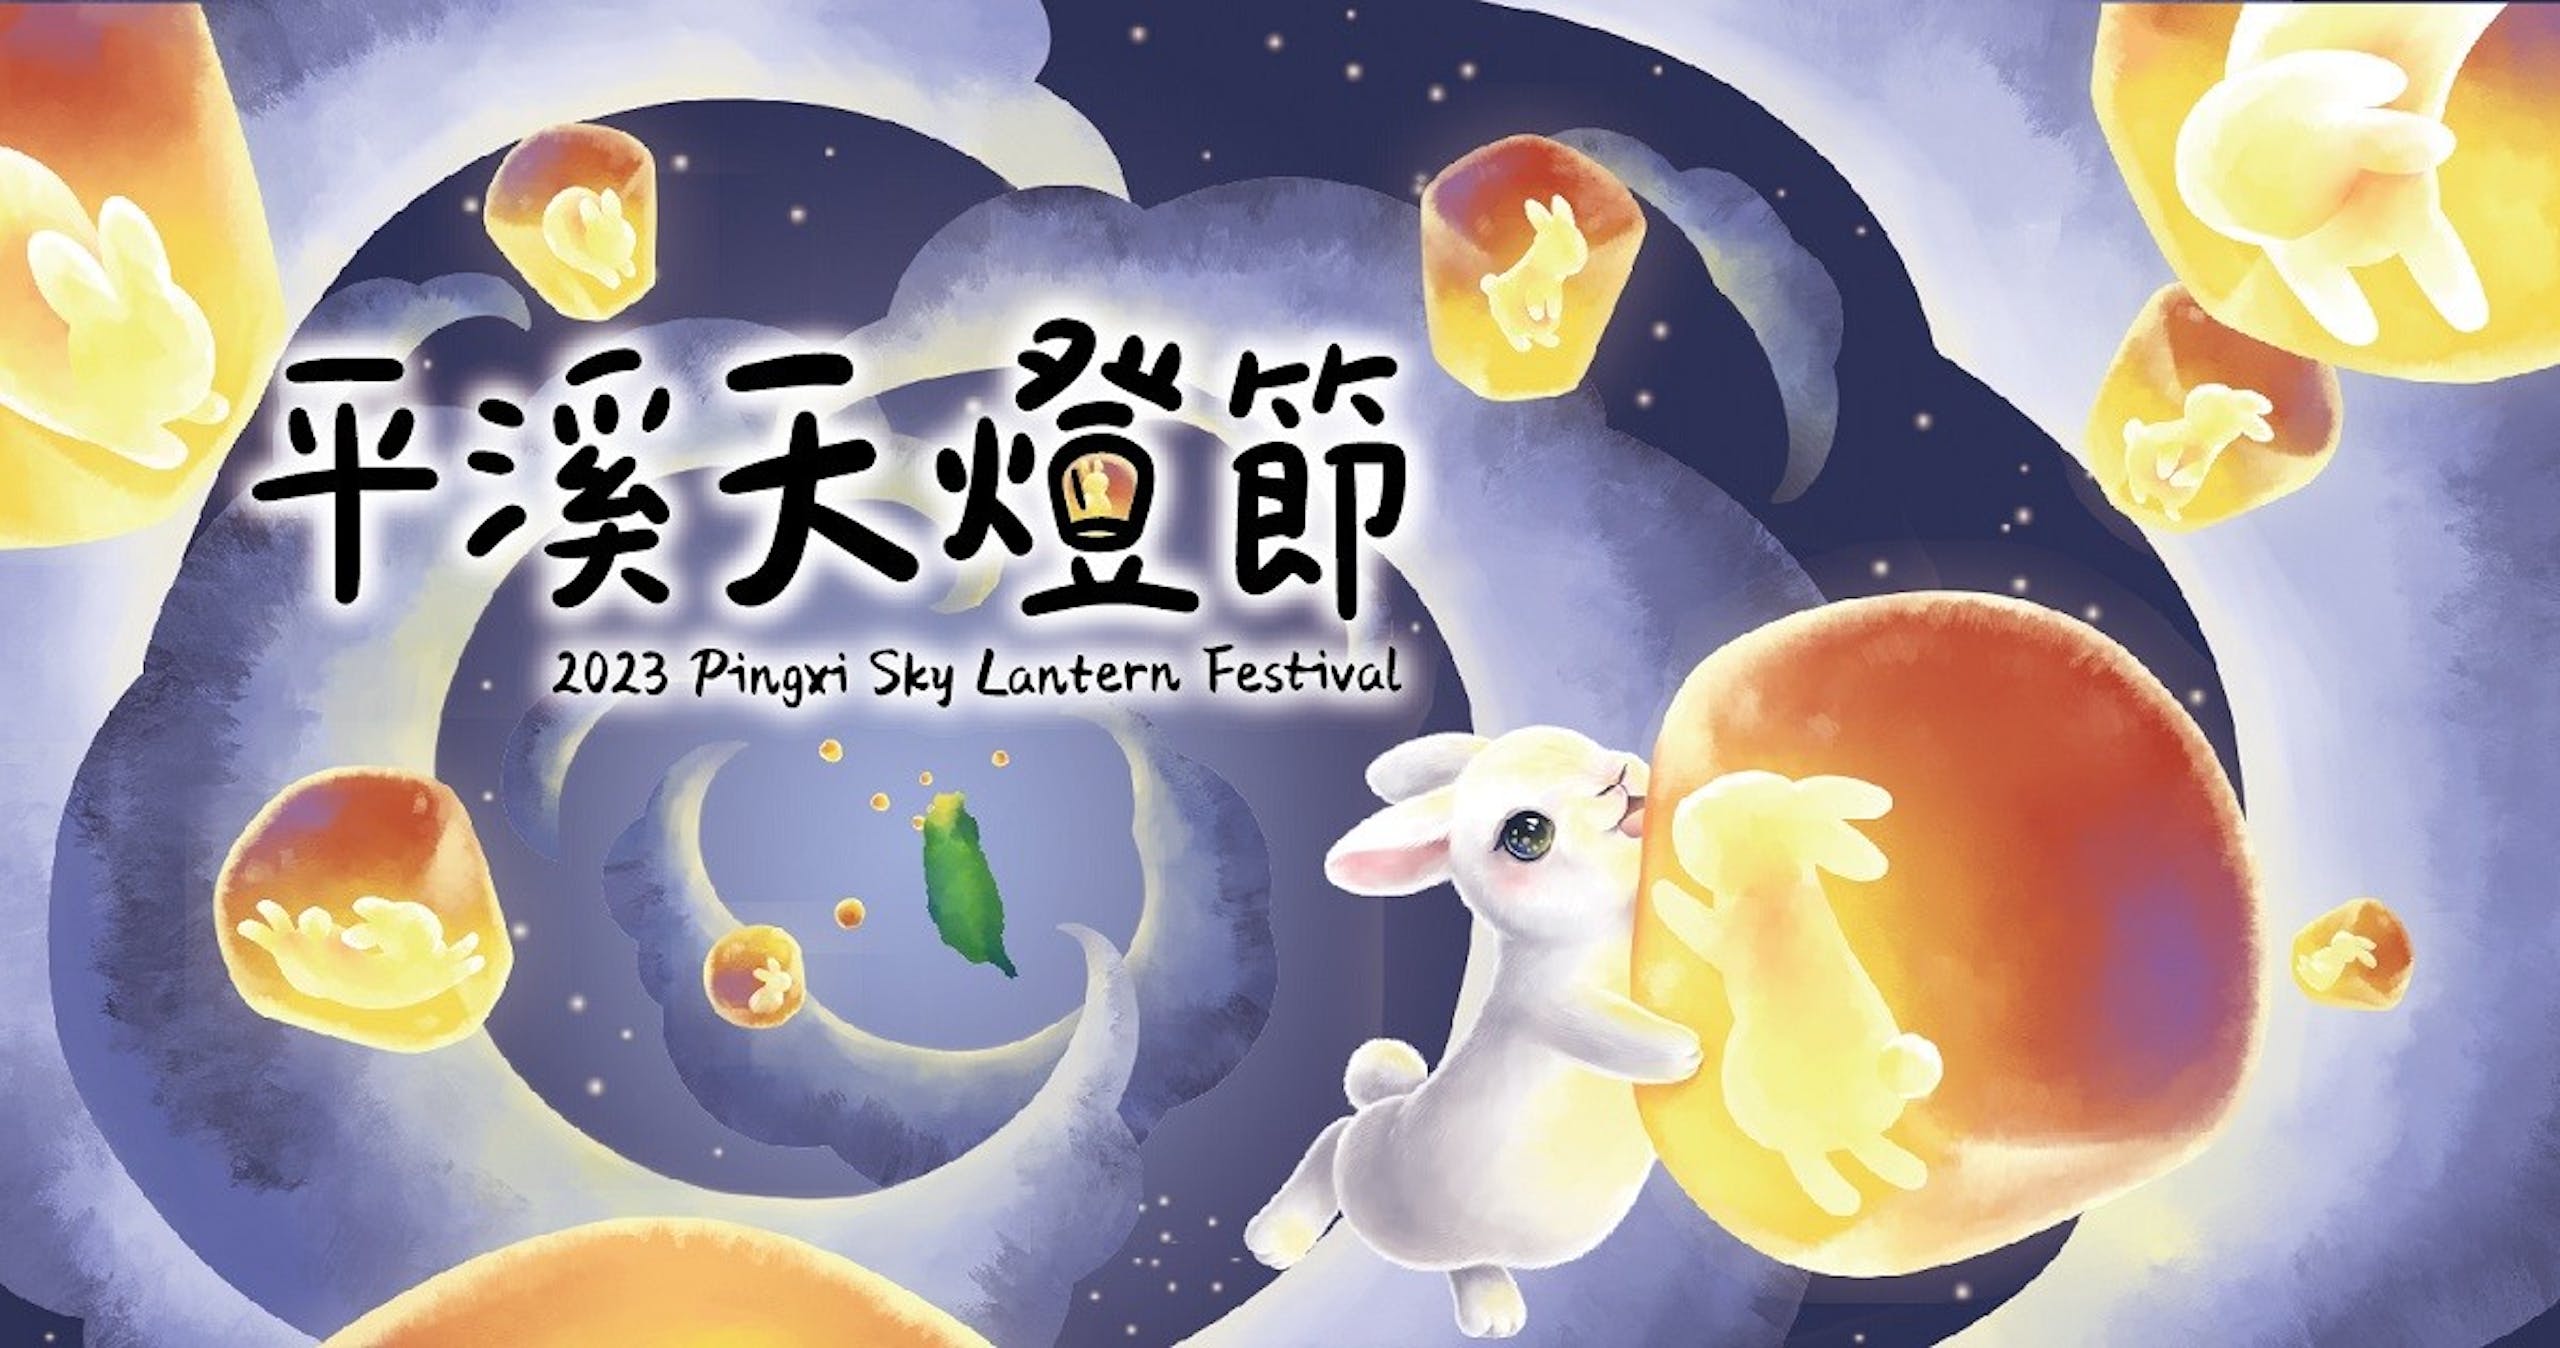 照片中提到了平溪天燈節、2023 Pingxi Sky Lantern Festival、2，包含了平溪區、平溪區、元宵節、雅虎！台灣、福特 Kuga Vignale